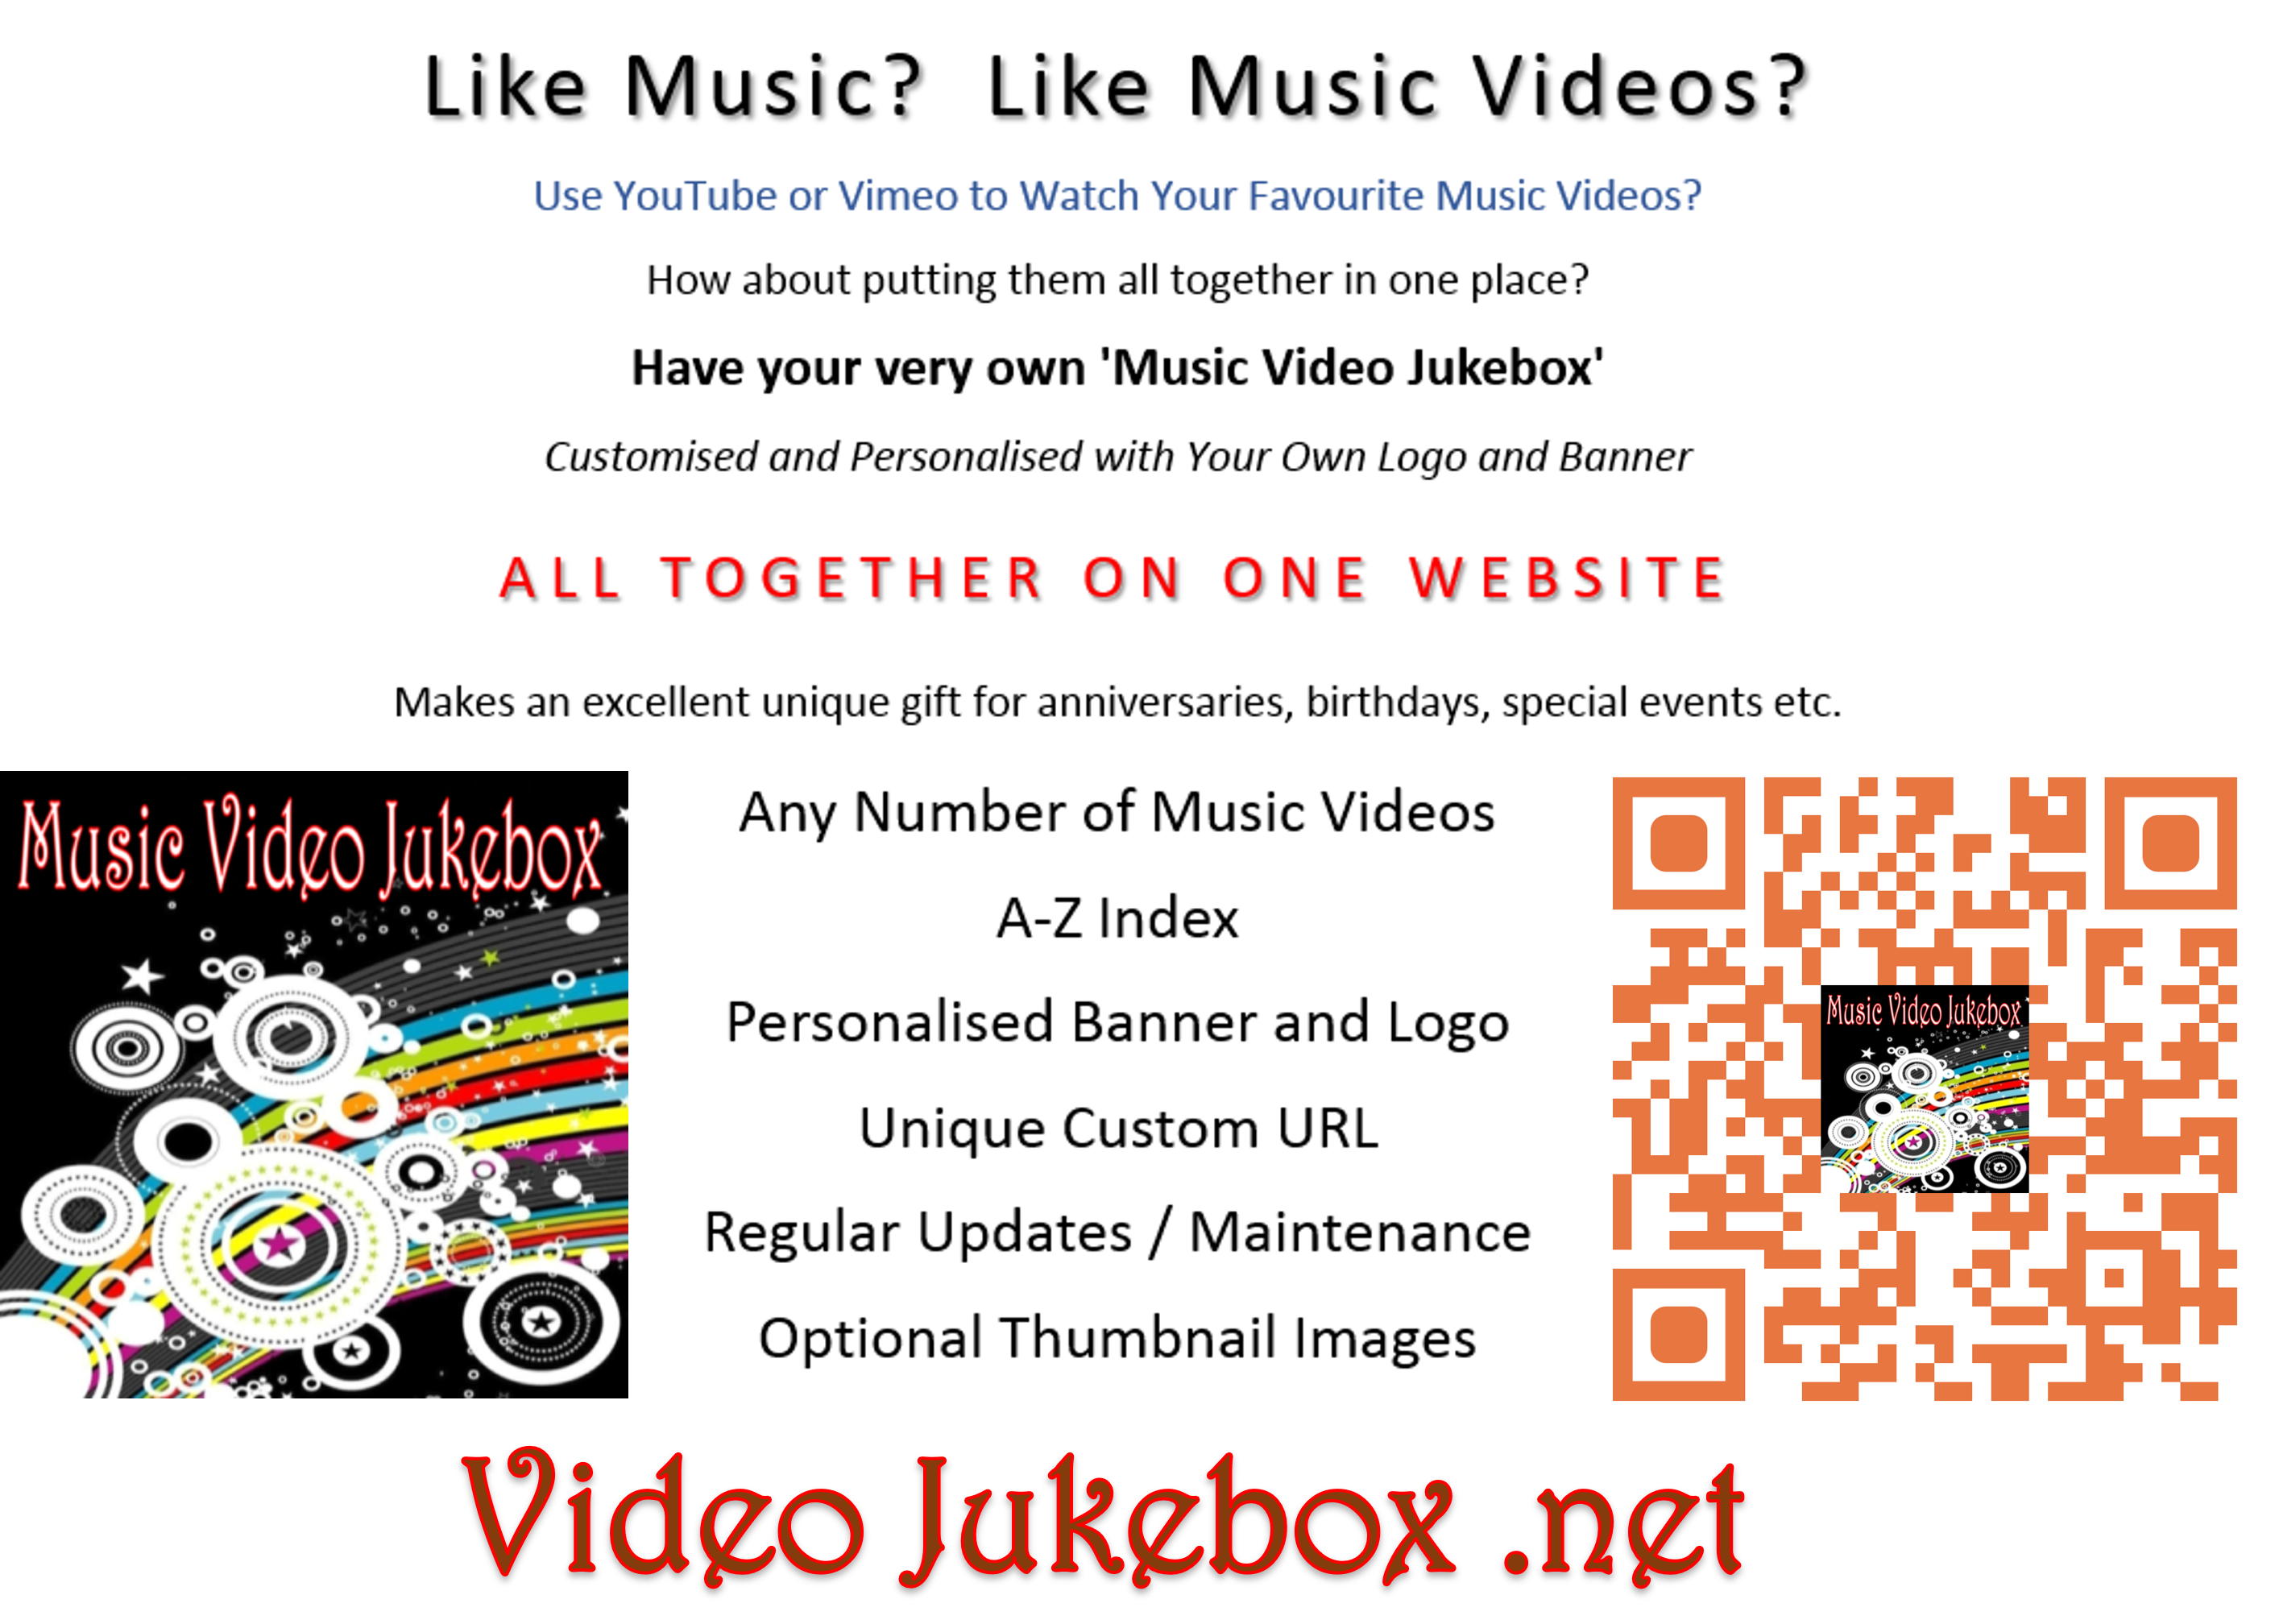 Video Jukebox .net 